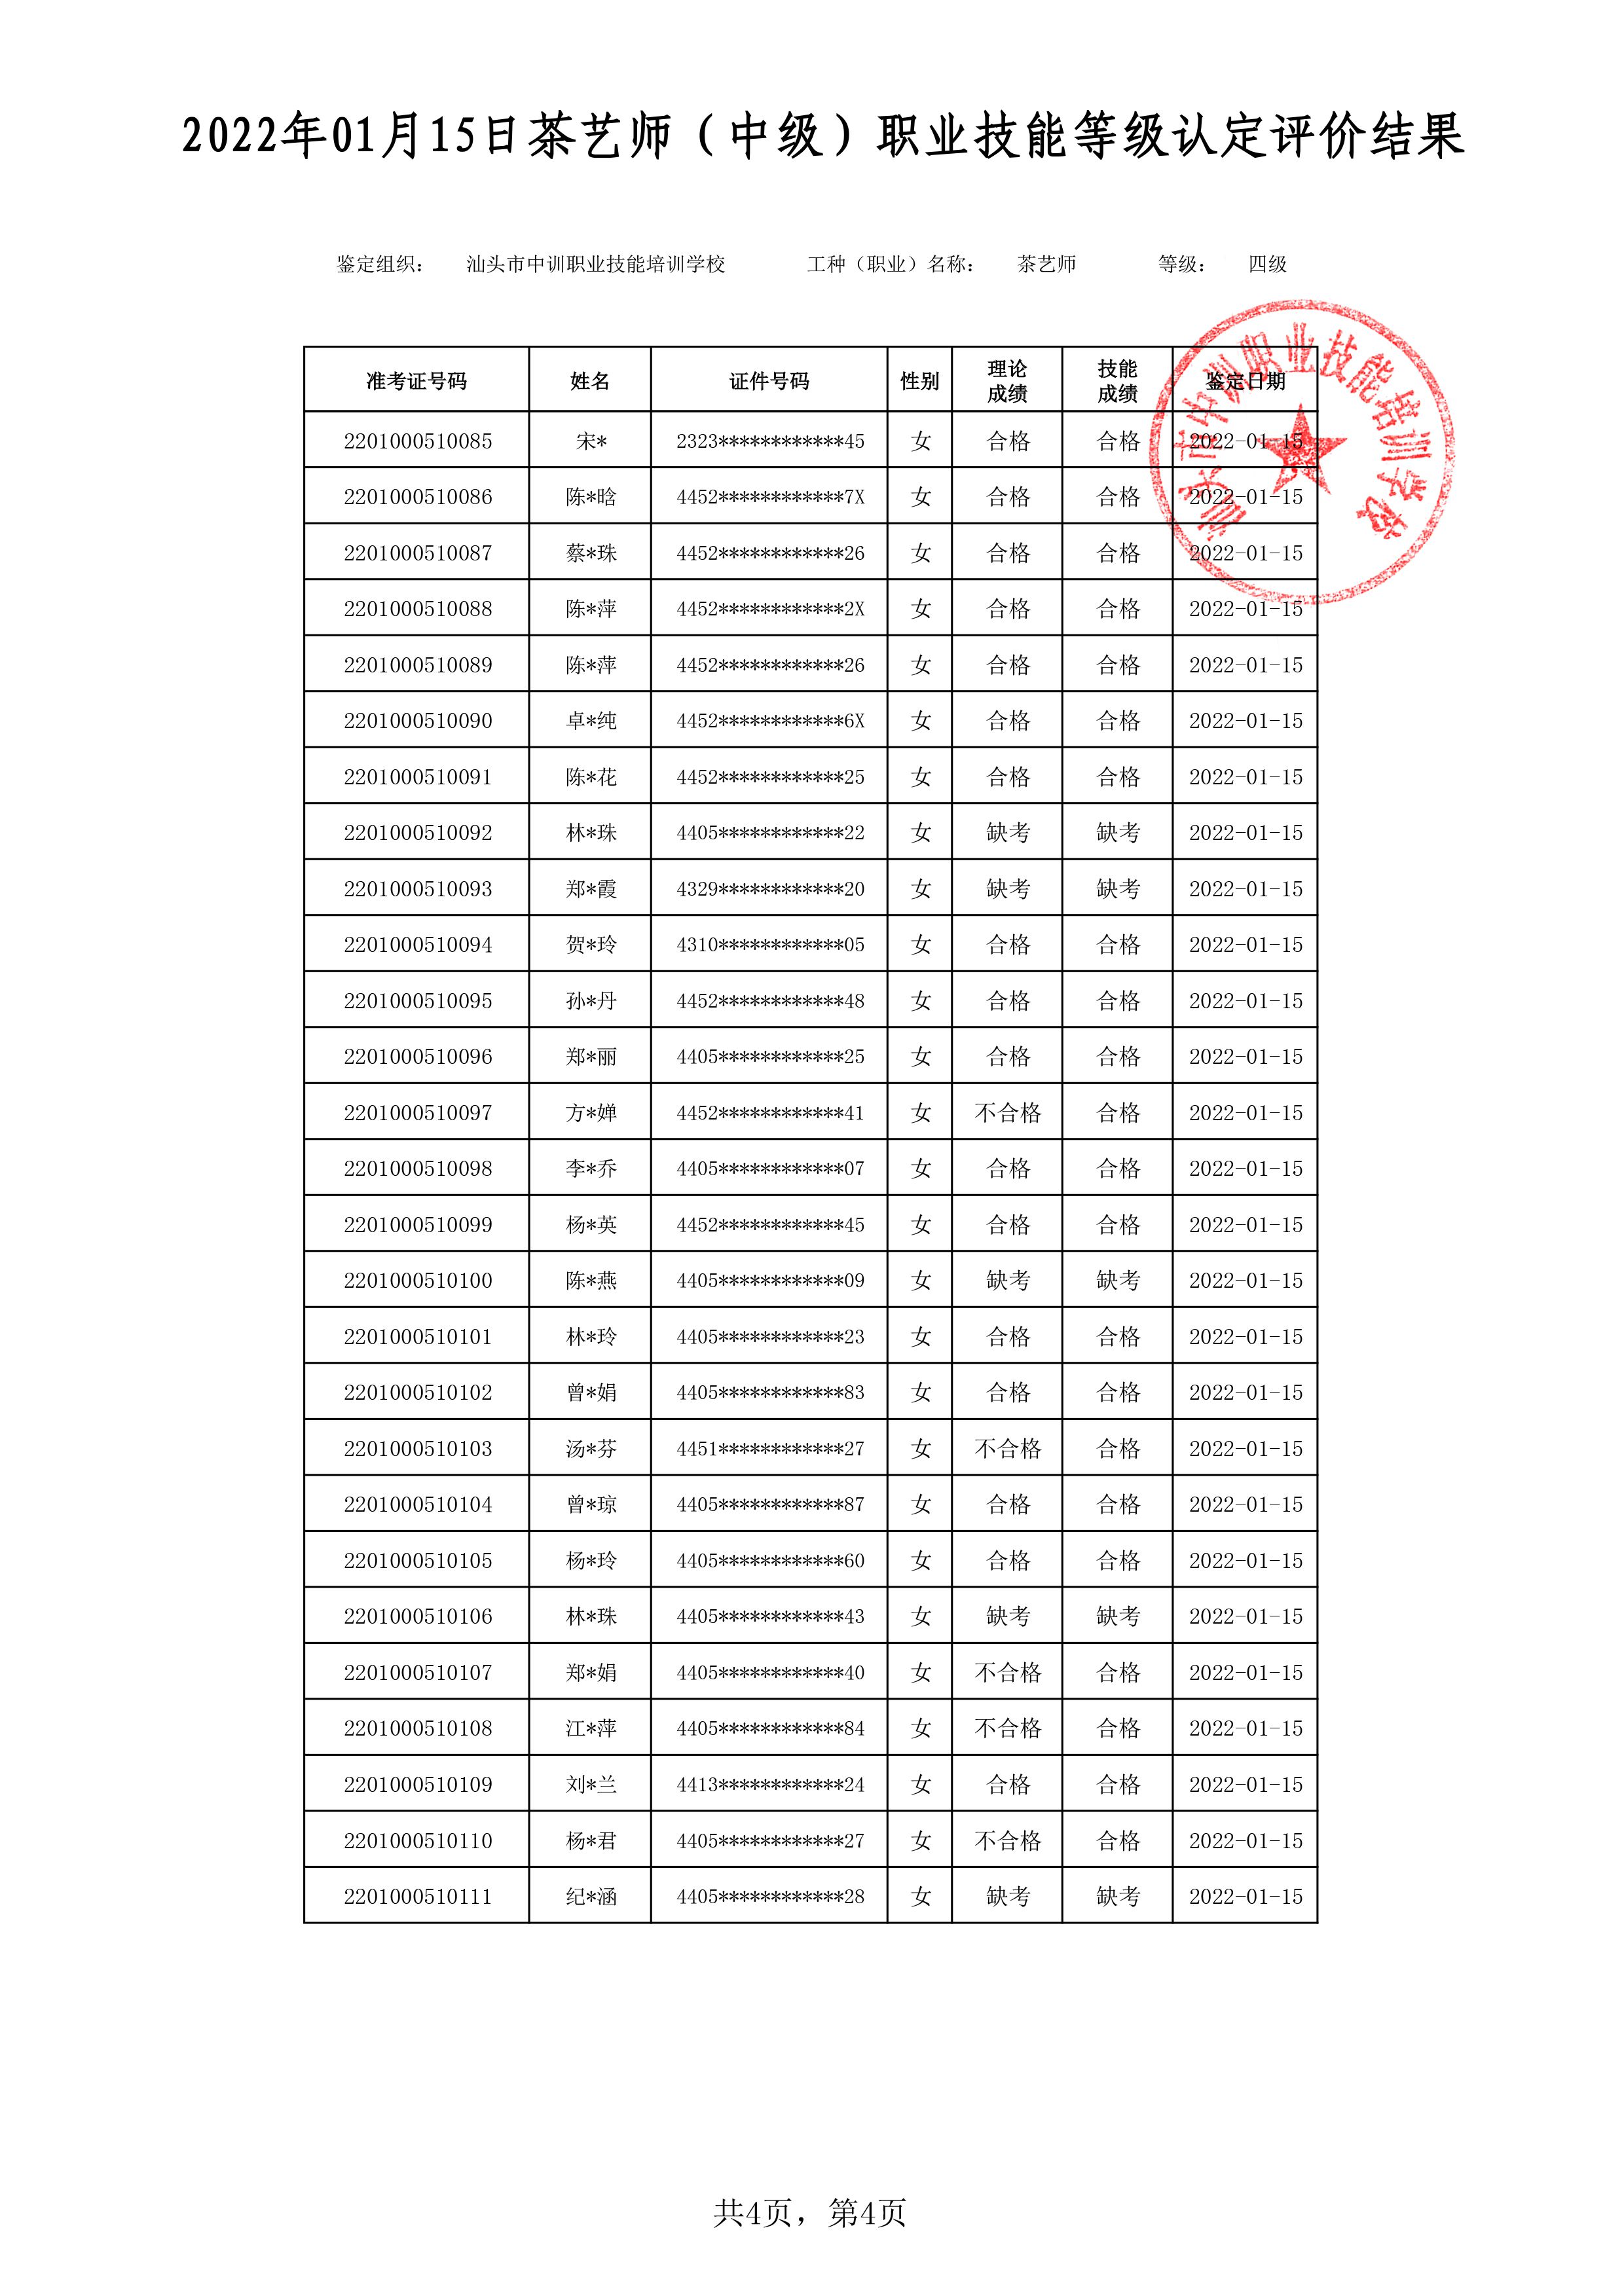 22-01-15四级茶艺师考试鉴定名册表-4 副本.jpg